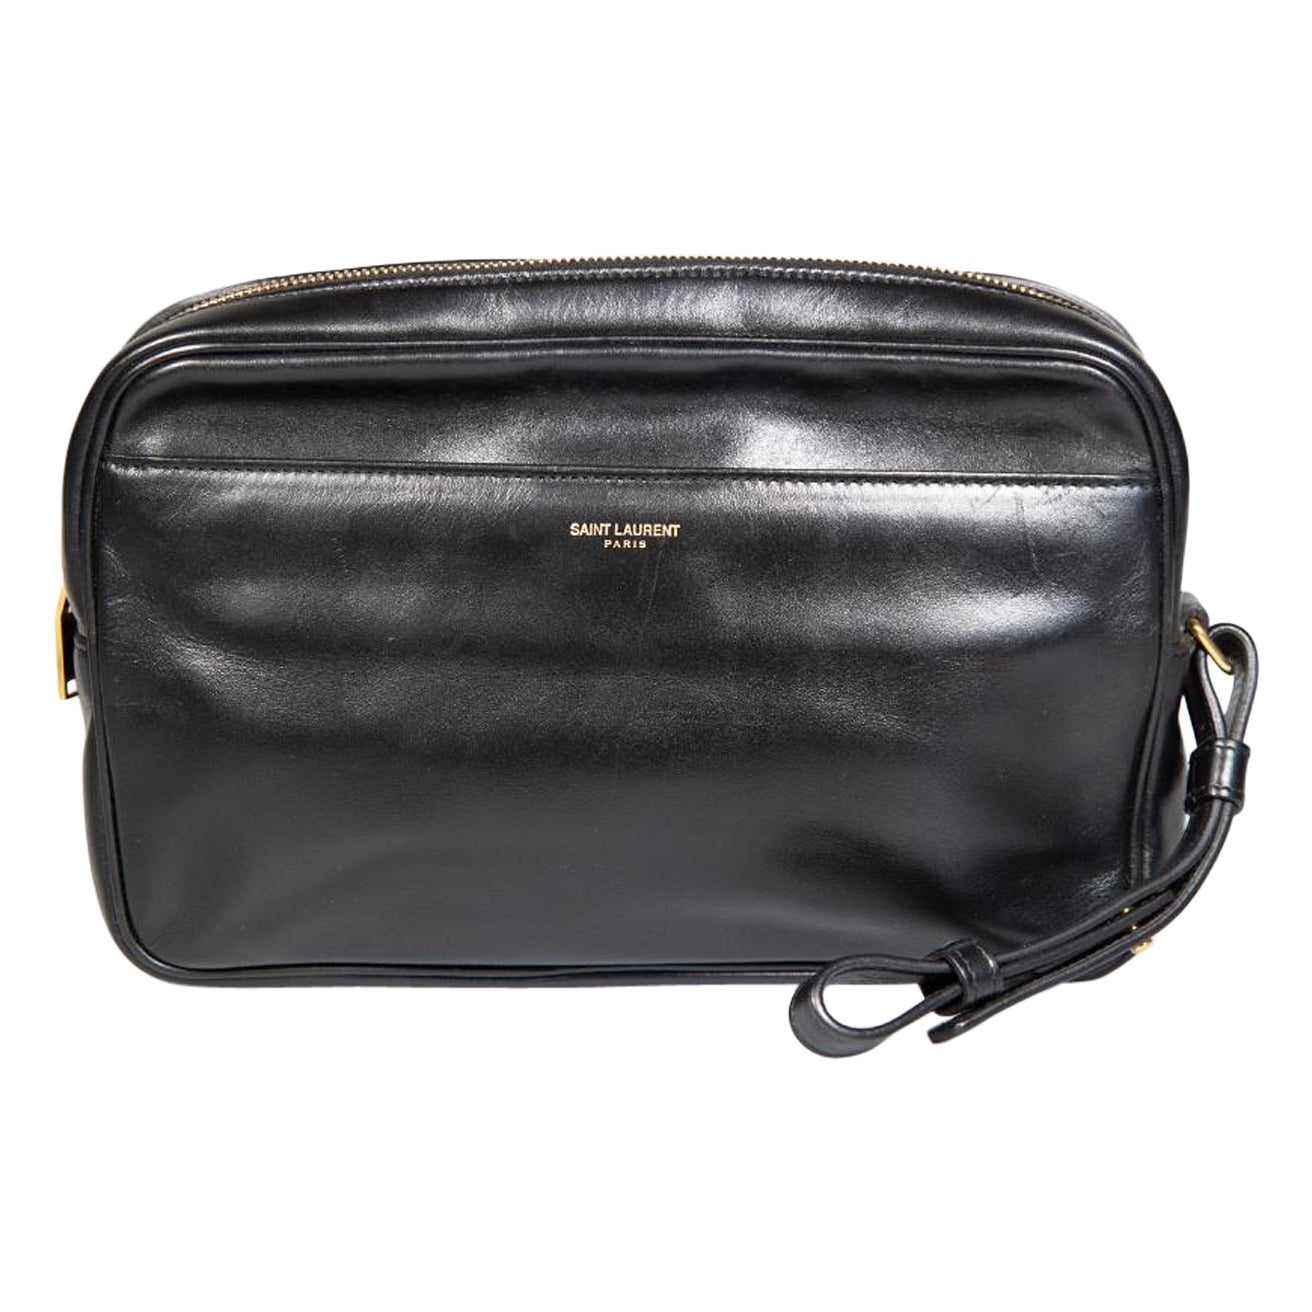 Saint Laurent Black Leather Medium Clutch Bag For Sale